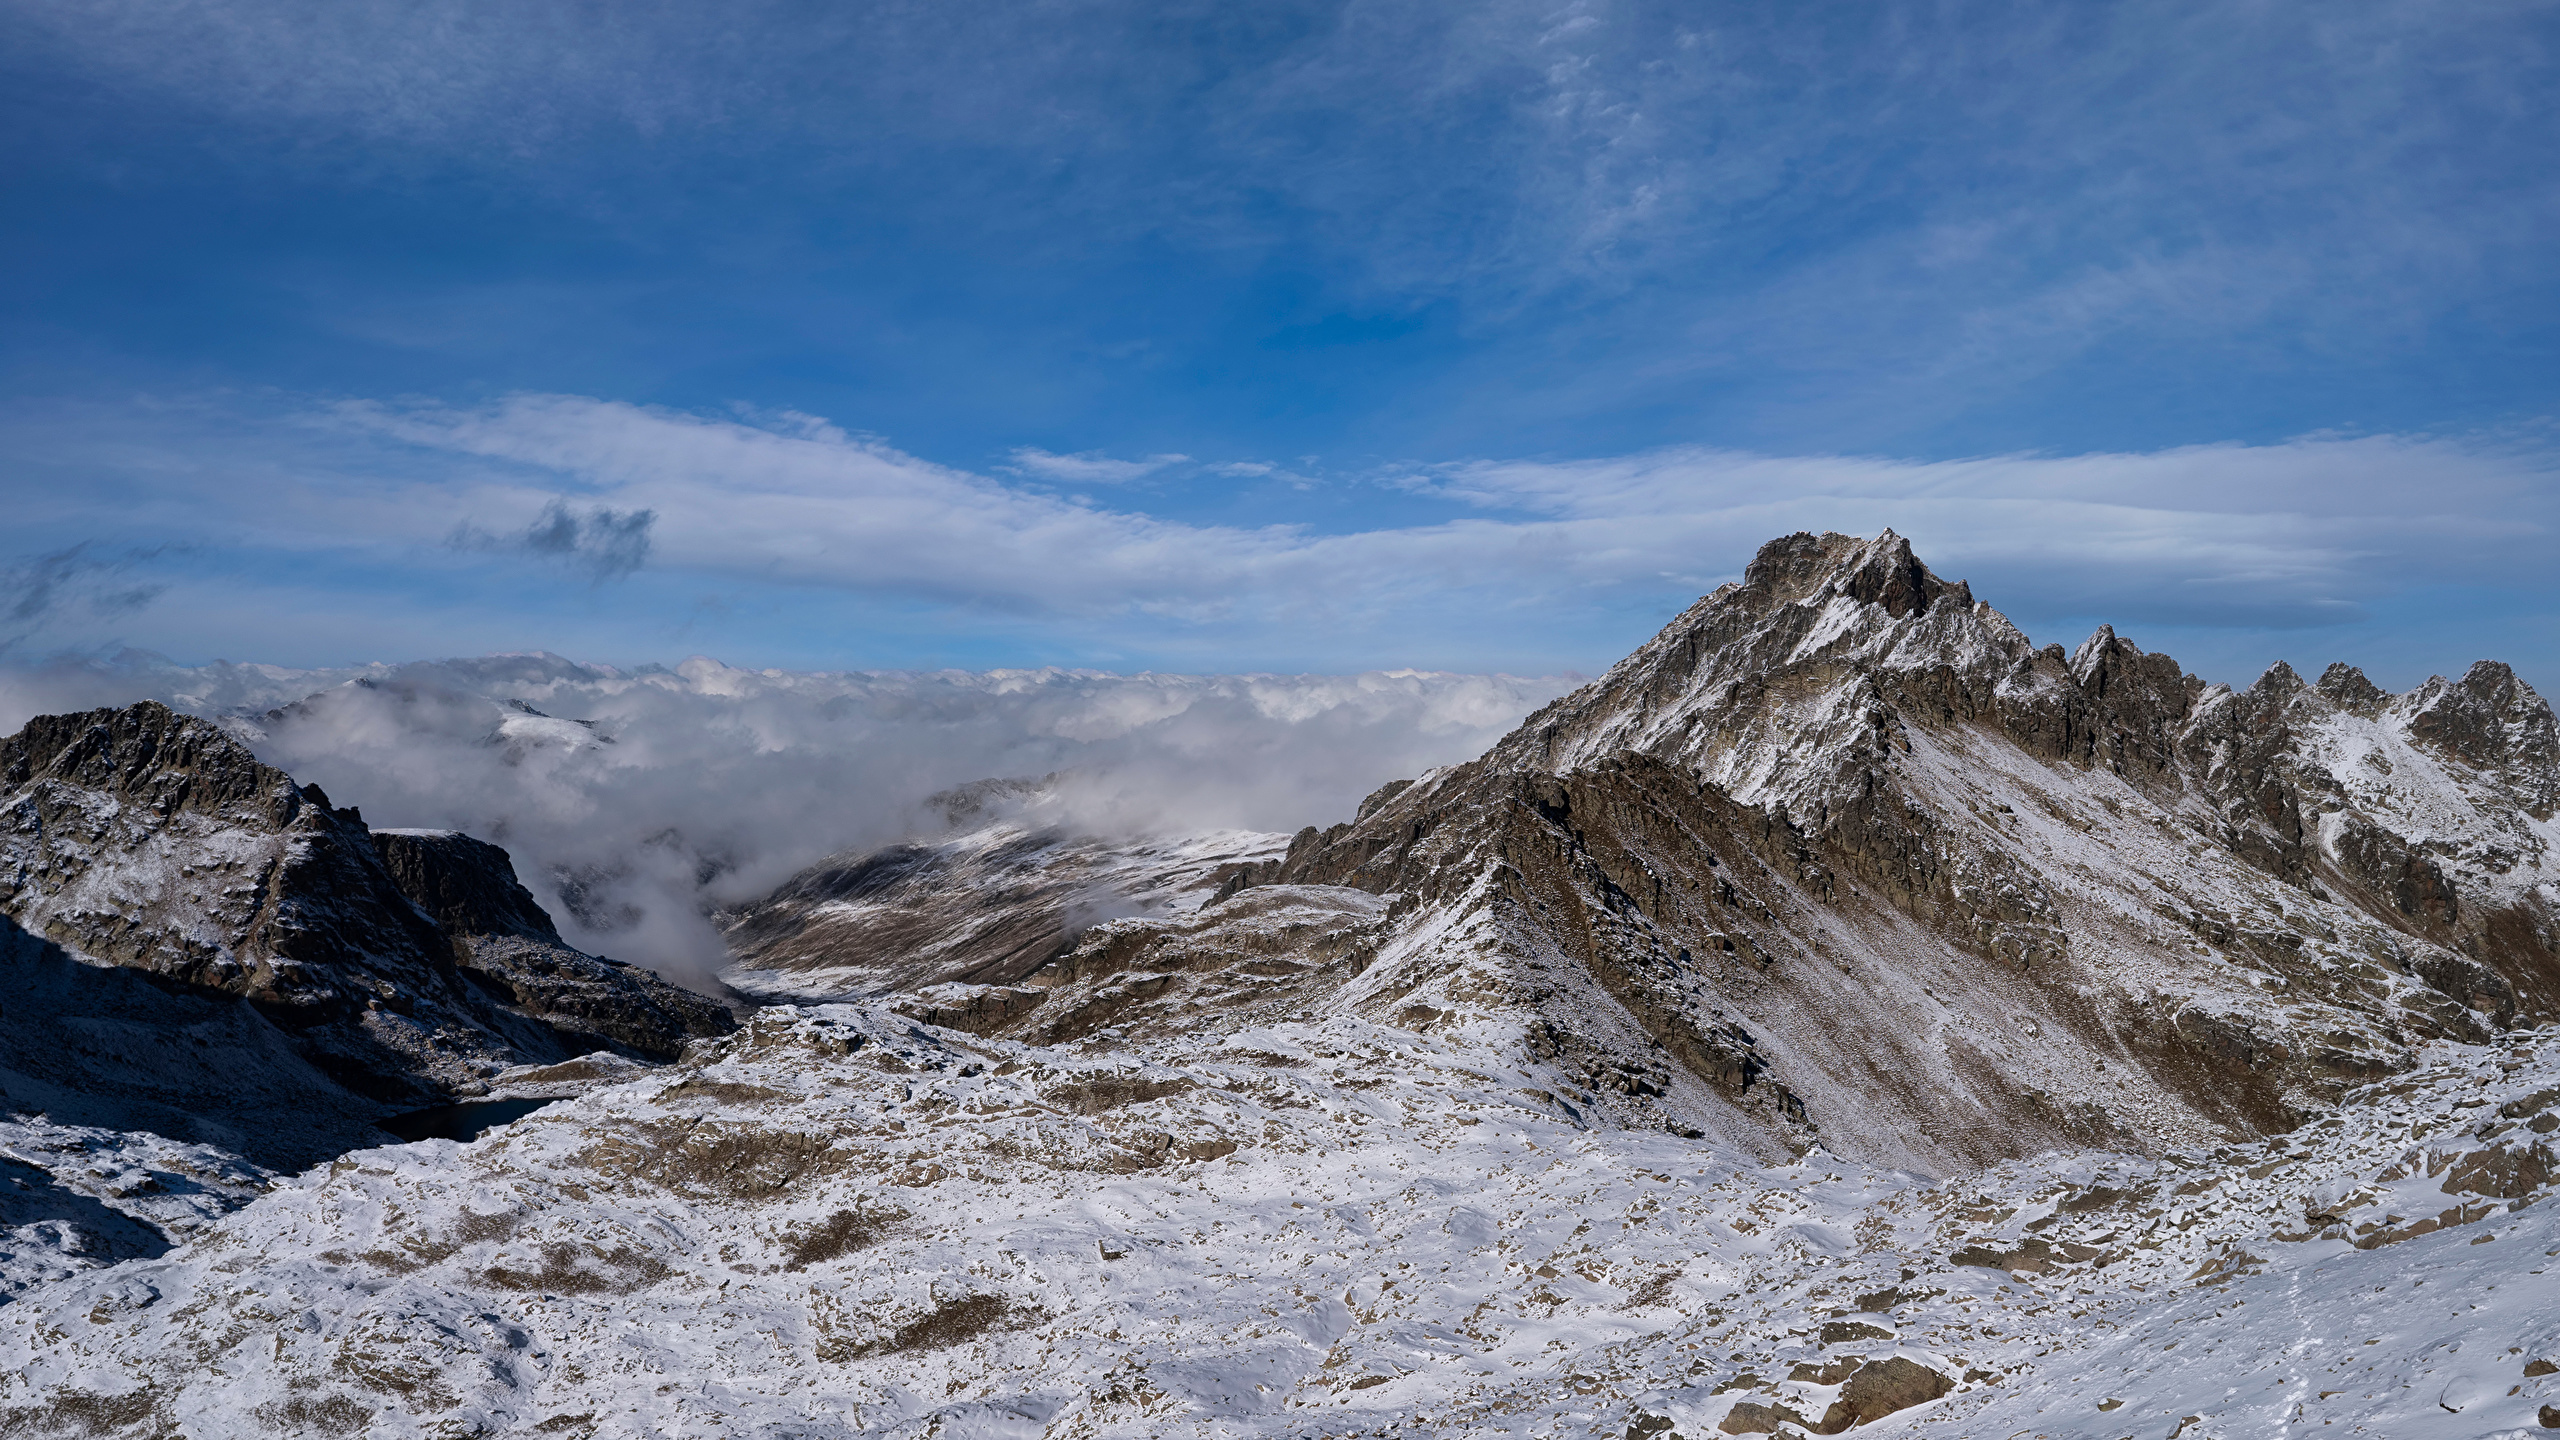 Фотографии Франция Ariege, Pyrenees Горы Природа Небо облачно 2560x1440 гора Облака облако